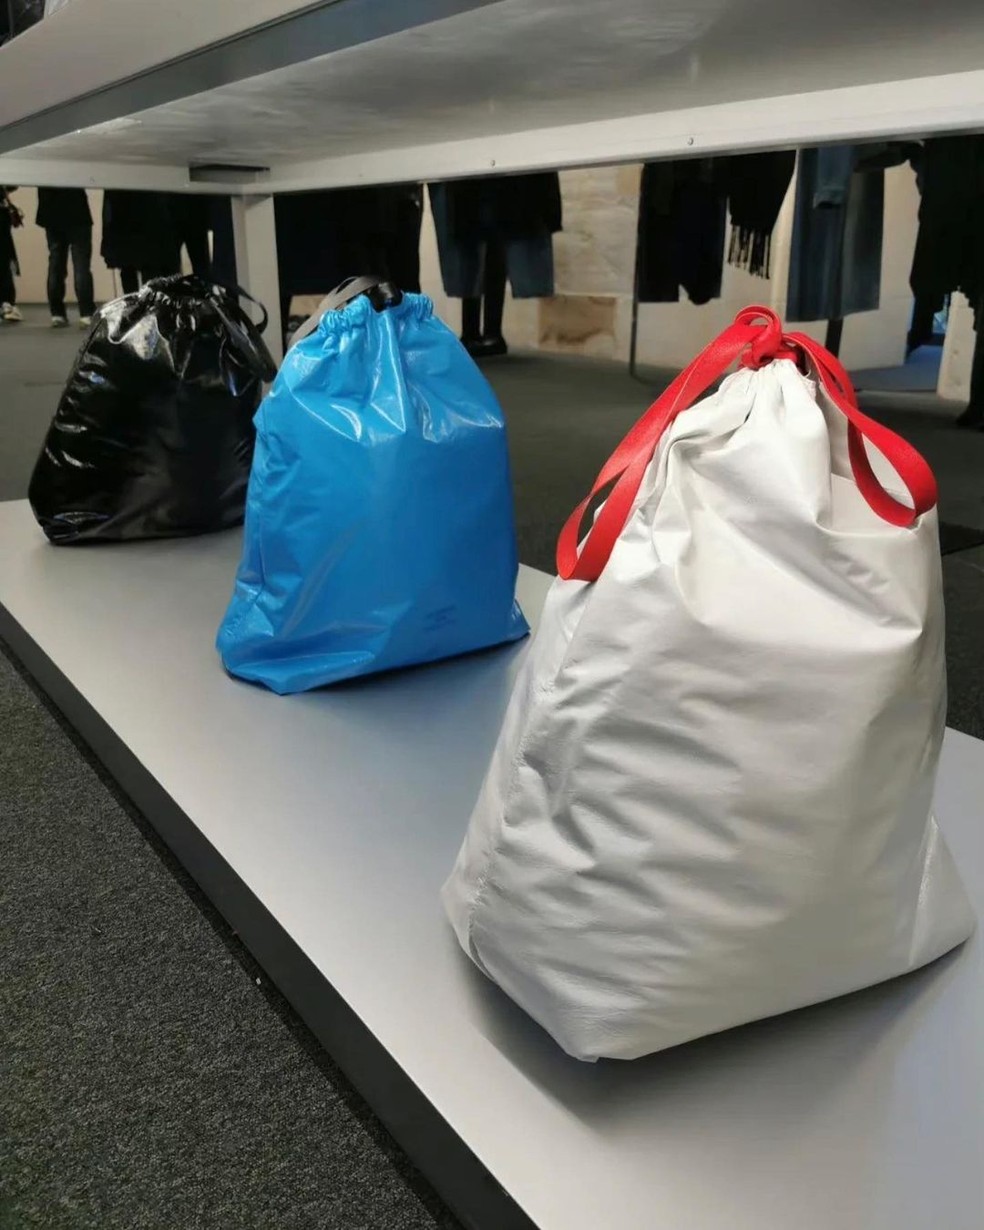 Balenciaga lança bolsas de luxo inspiradas em sacos de lixo — Foto: Instagram @myfacewheno_o / Reprodução